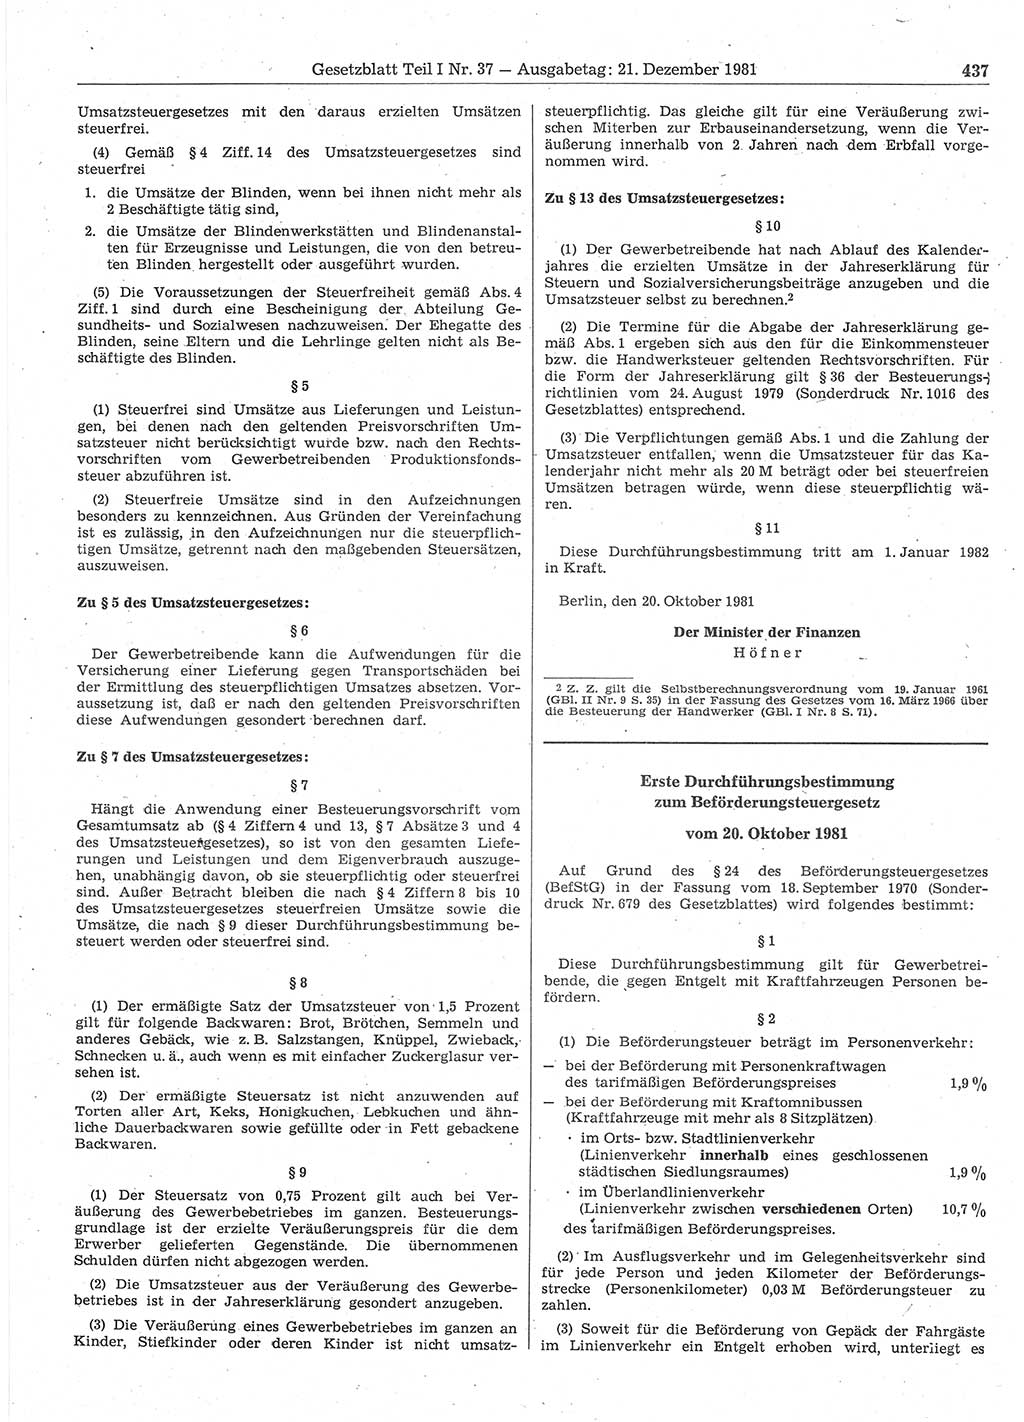 Gesetzblatt (GBl.) der Deutschen Demokratischen Republik (DDR) Teil Ⅰ 1981, Seite 437 (GBl. DDR Ⅰ 1981, S. 437)